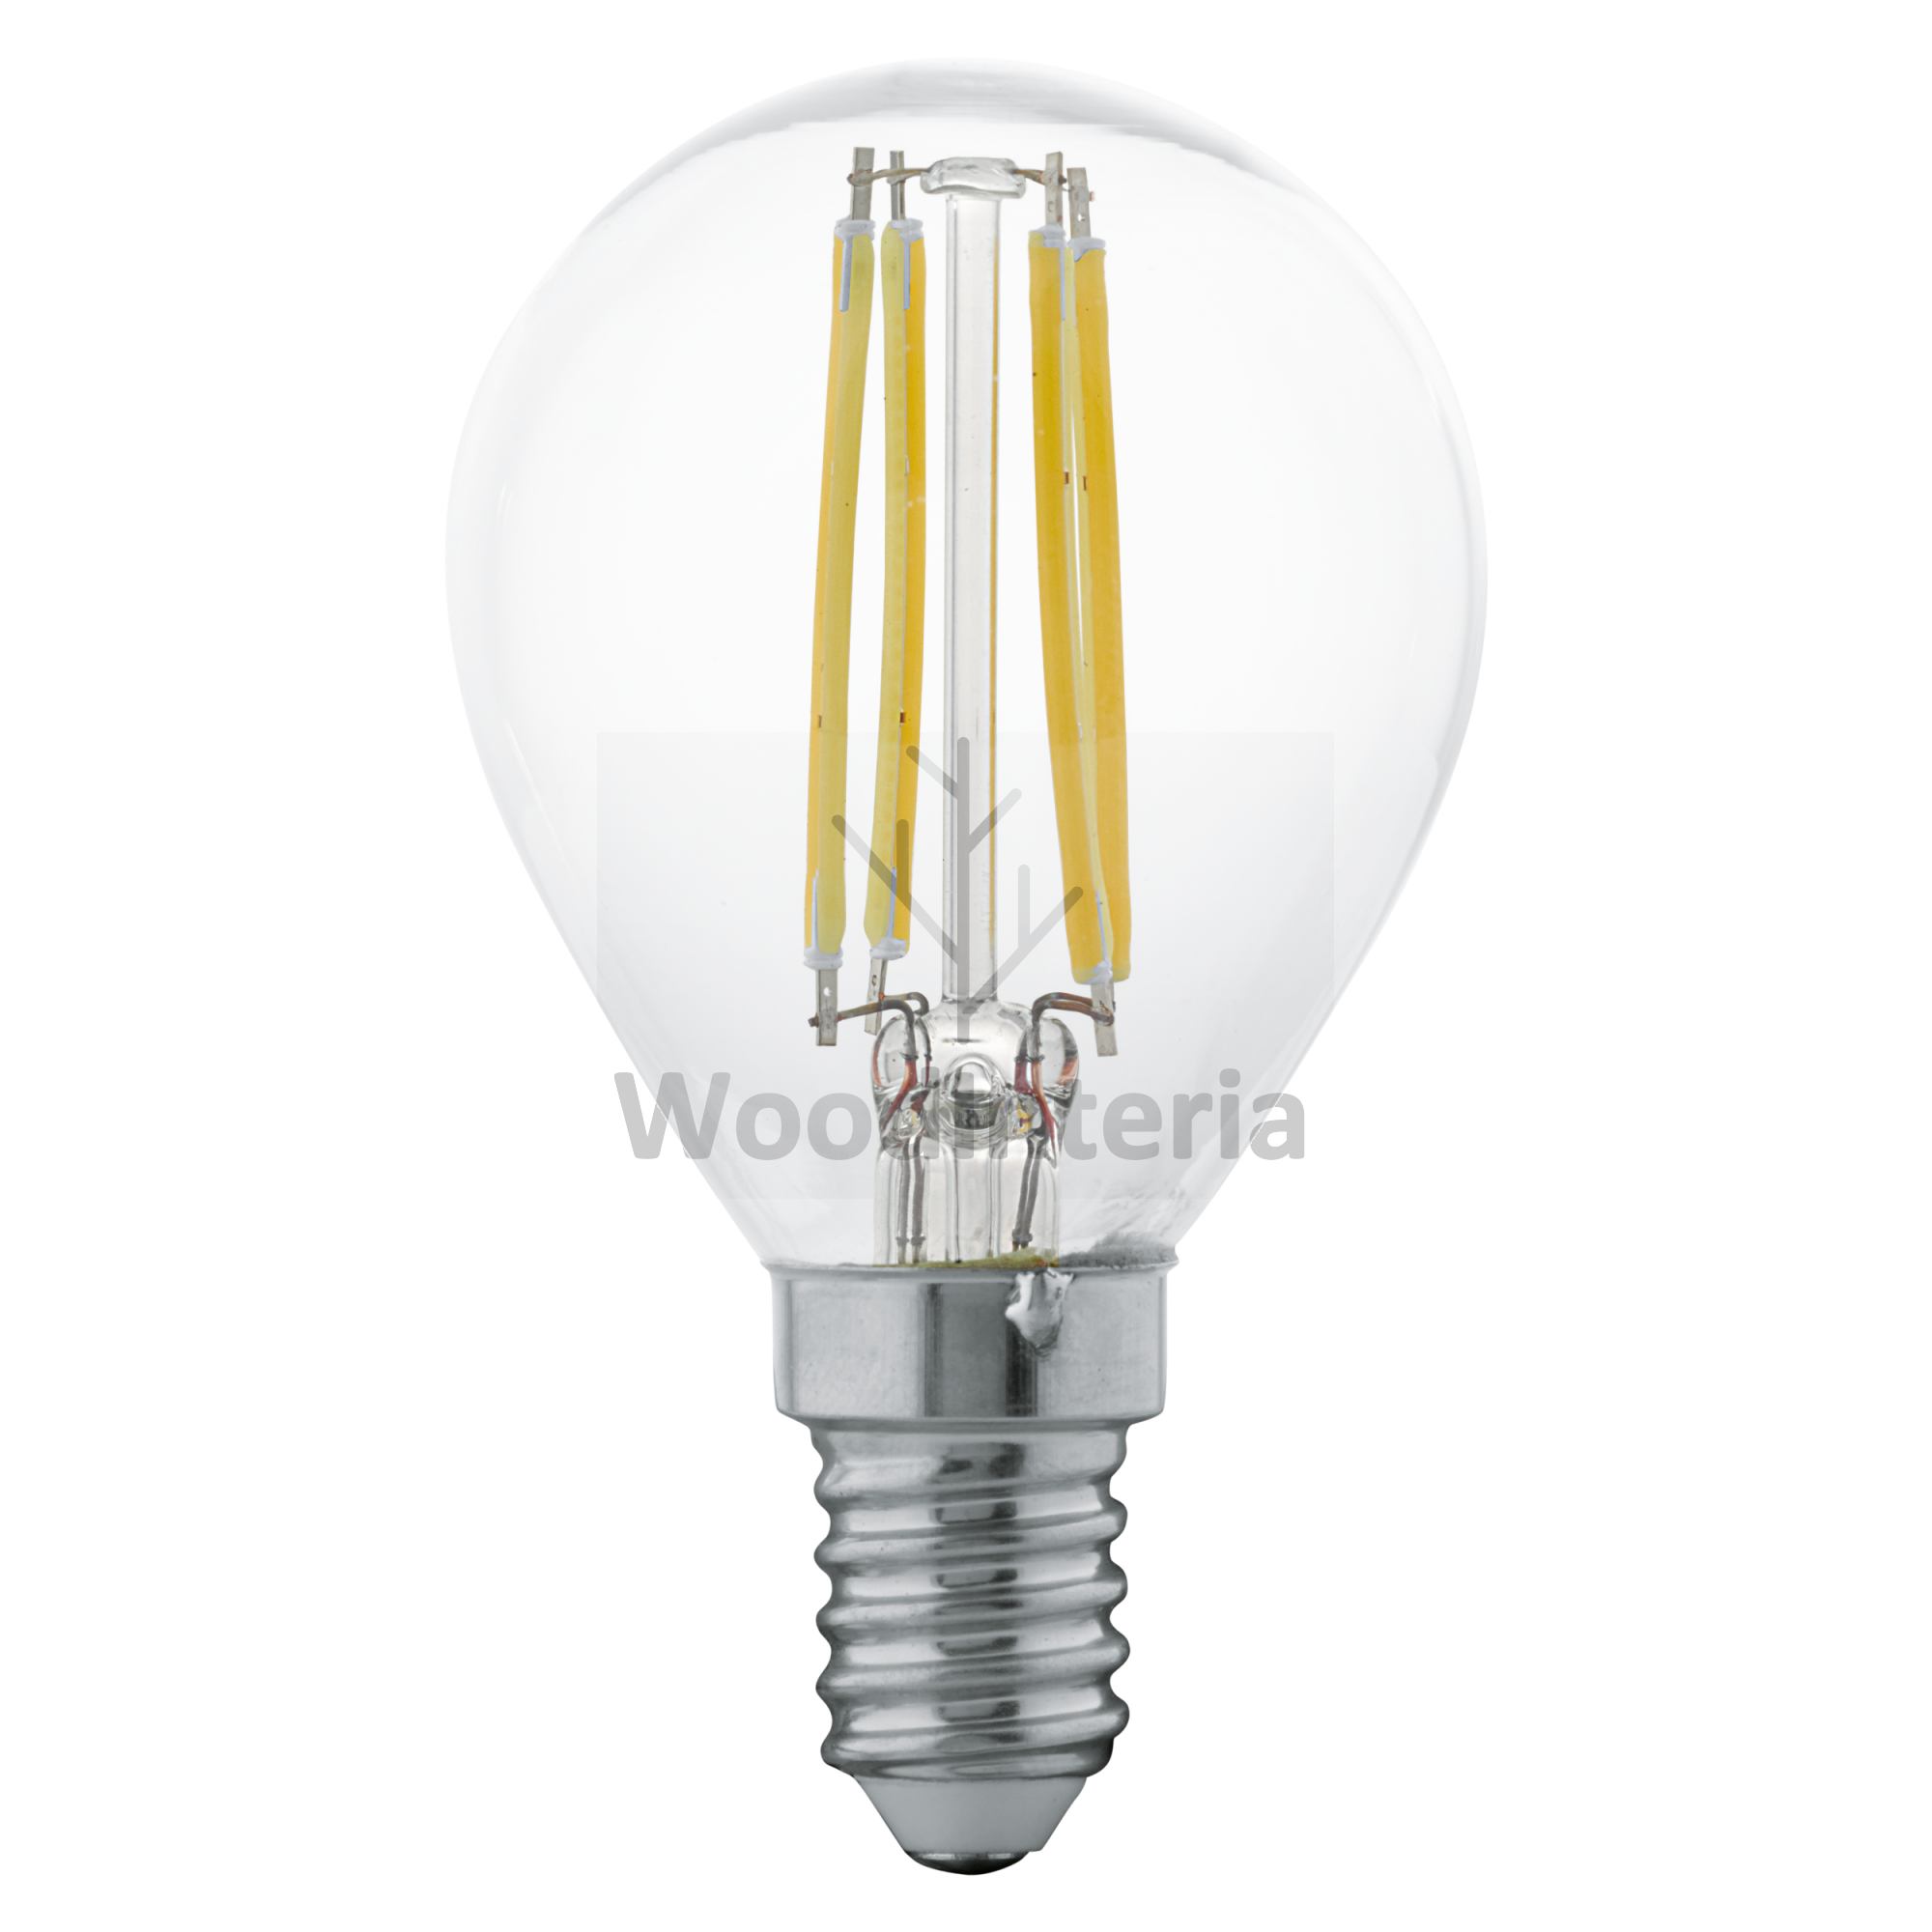 фото лампочка clean bulb #11 в скандинавском интерьере лофт эко | WoodInteria